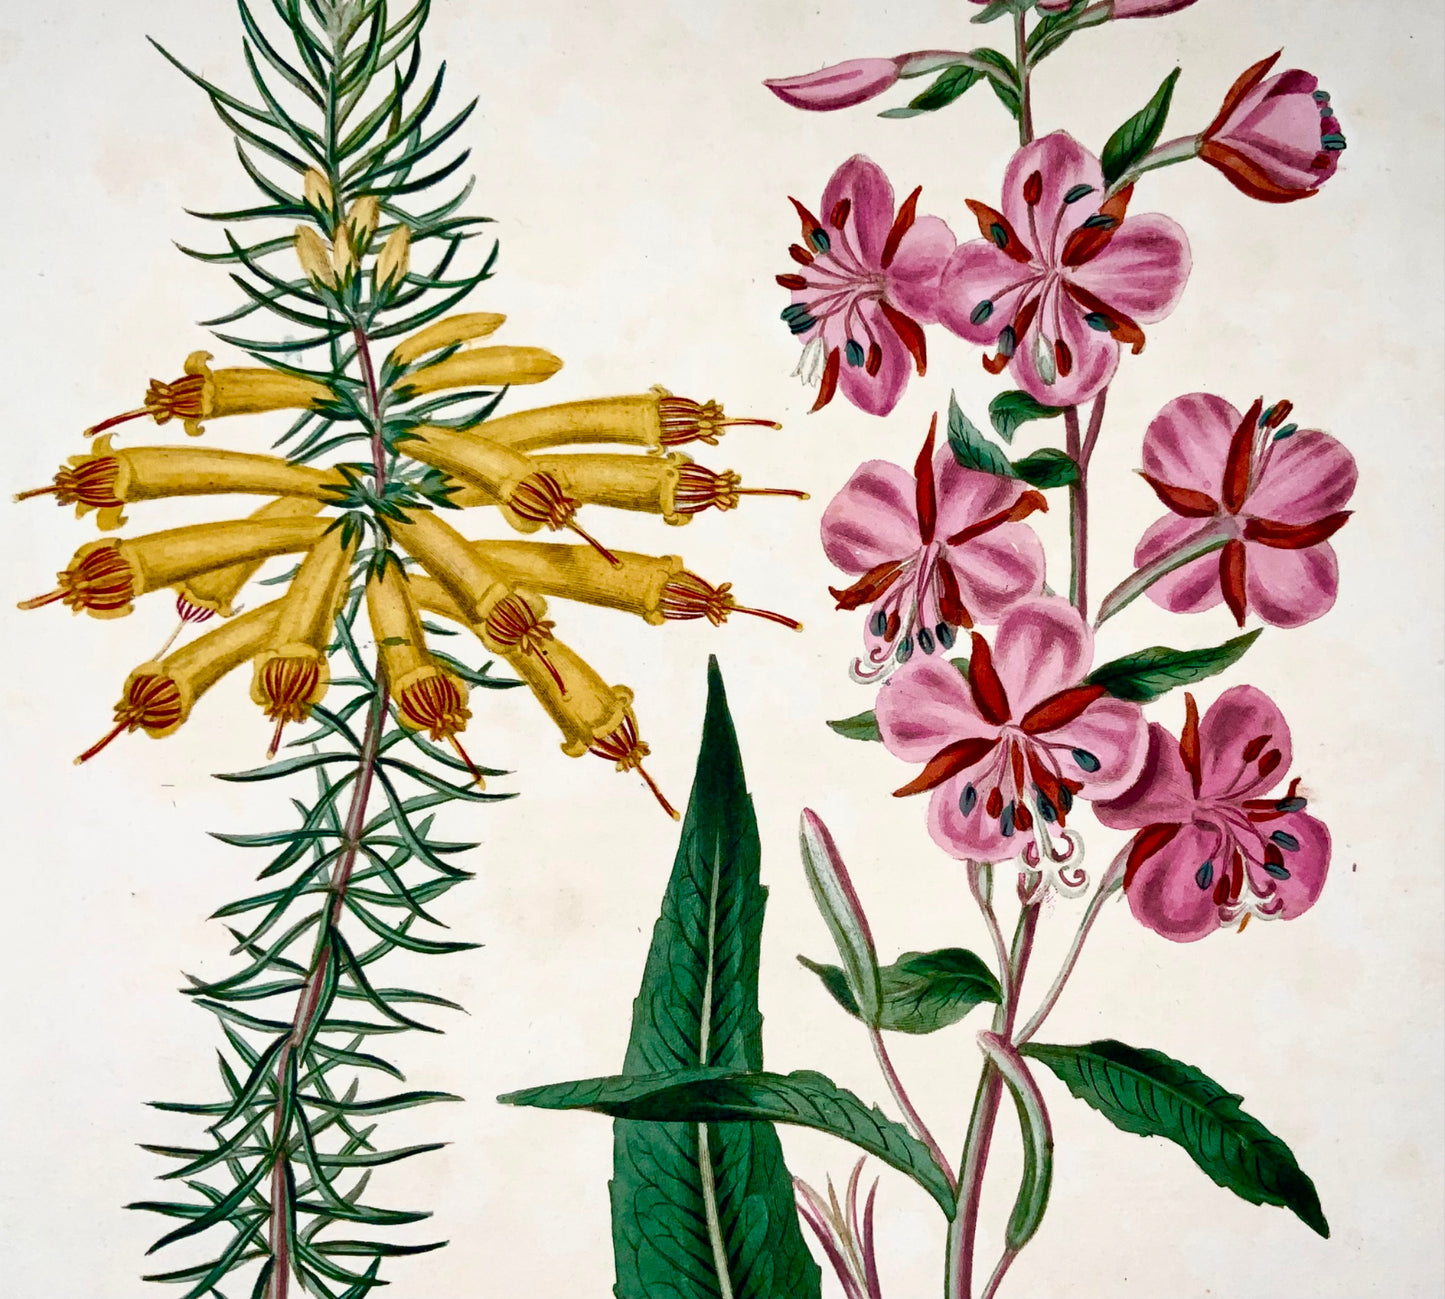 1805 Erica, Rose bay, rara Syd. Edwards, quarto, Giardinaggio pratico, botanica